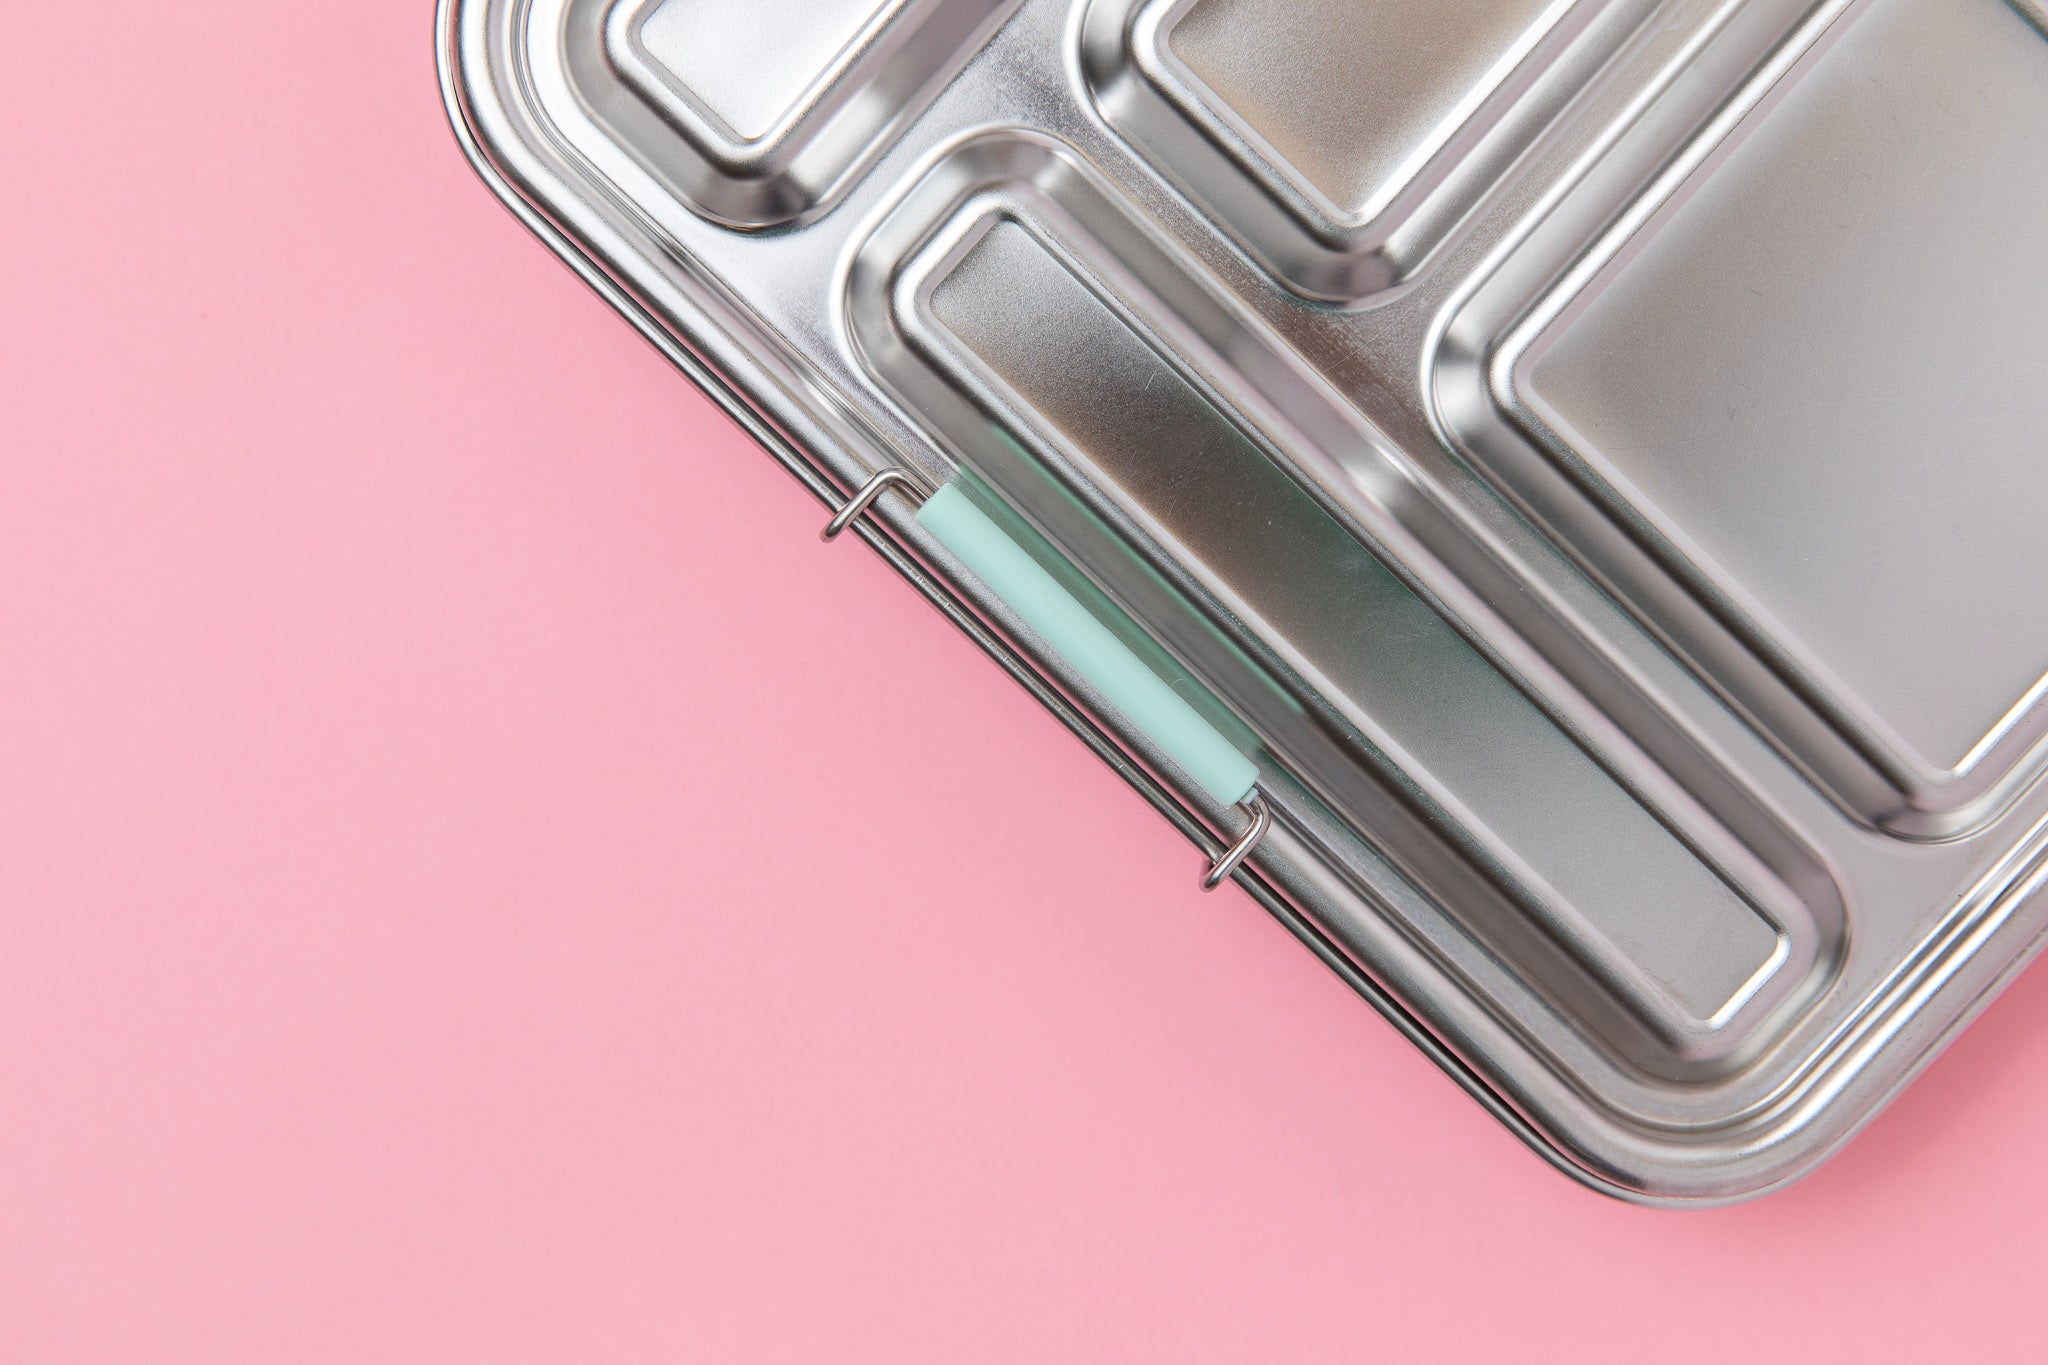 Leakproof Stainless Steel Lunch Box (Blue Seal & Lids), Nudie Rudie Lunch  Box